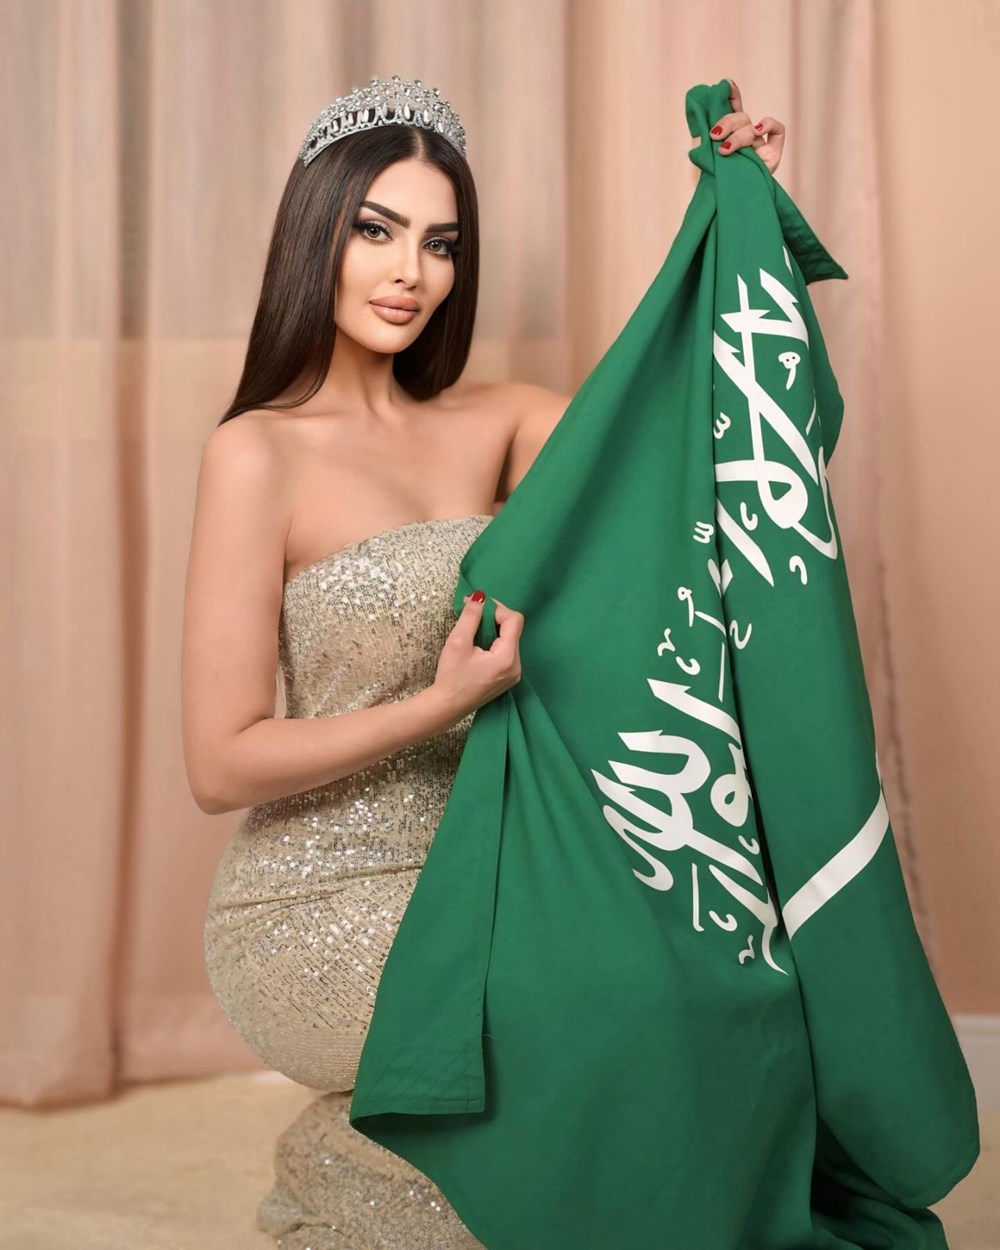 Ülke tarihine geçti! Suudi Arabistanlı model şimdi de Kainat Güzeli olmak için yarışacak - 3